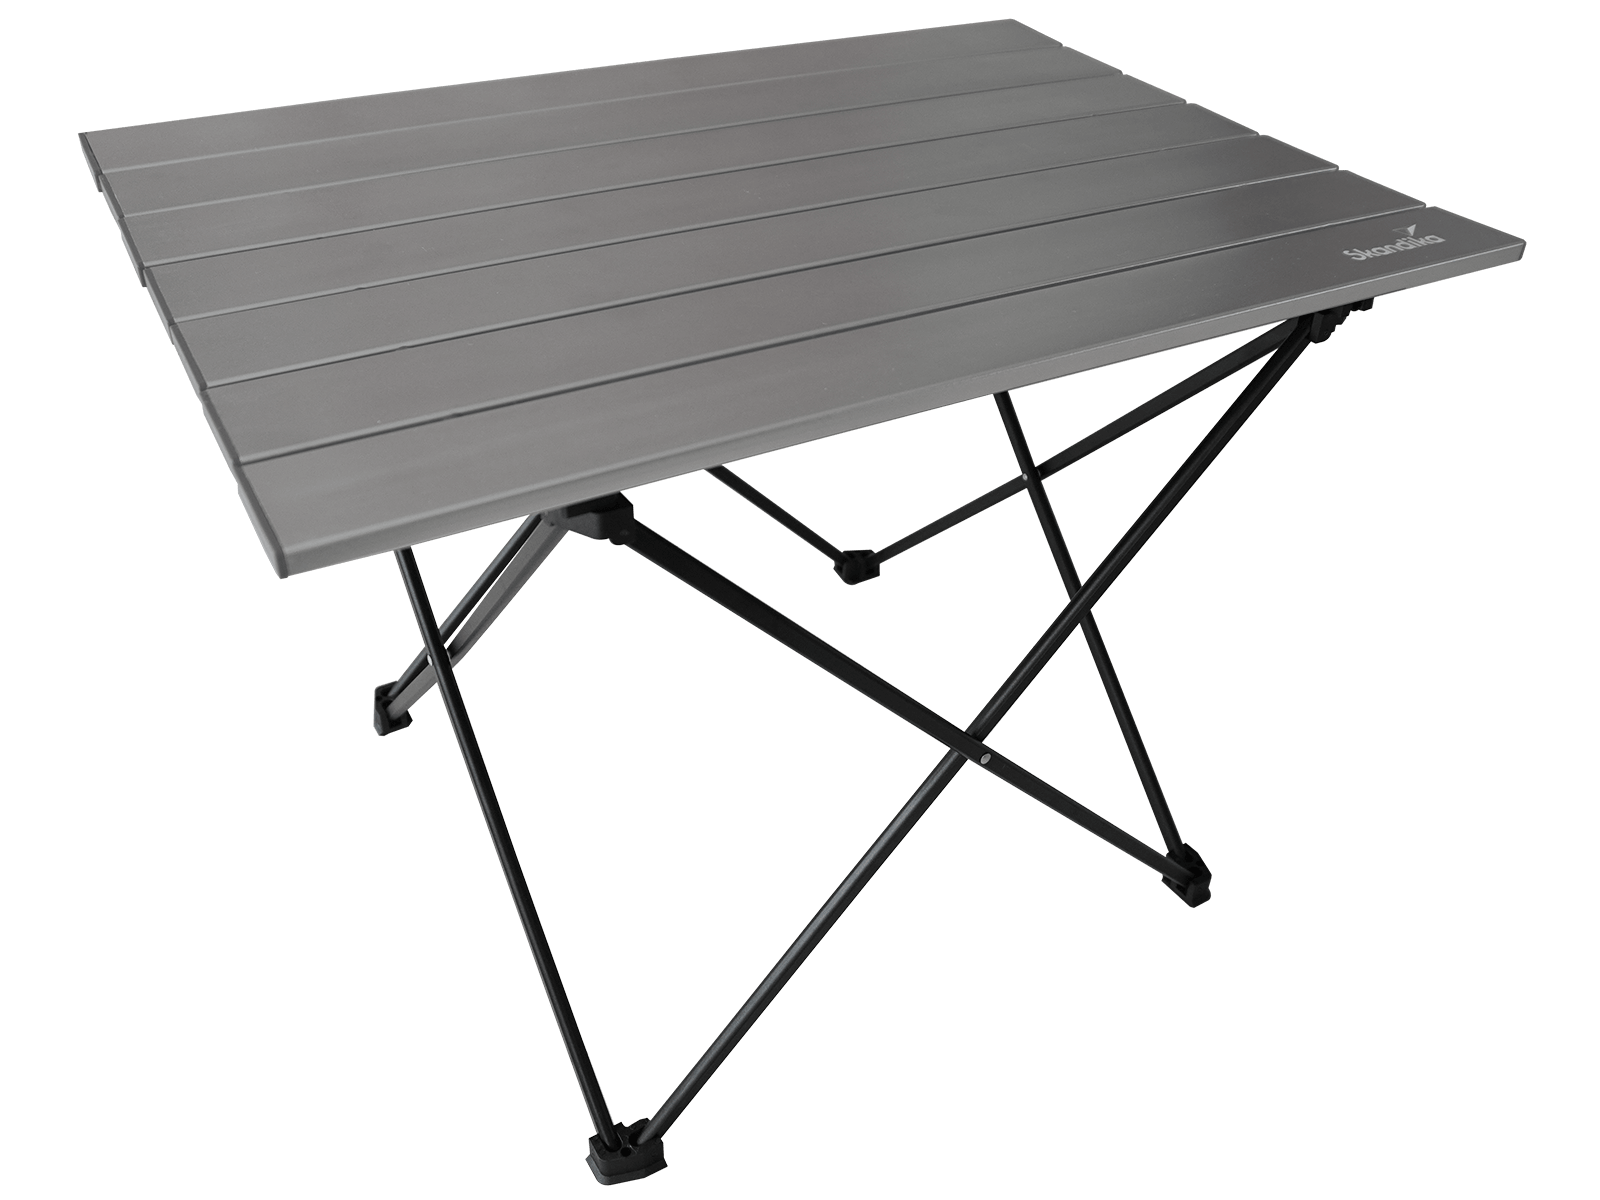 Table de camping pliante ultralégère en alliage d'aluminium pour